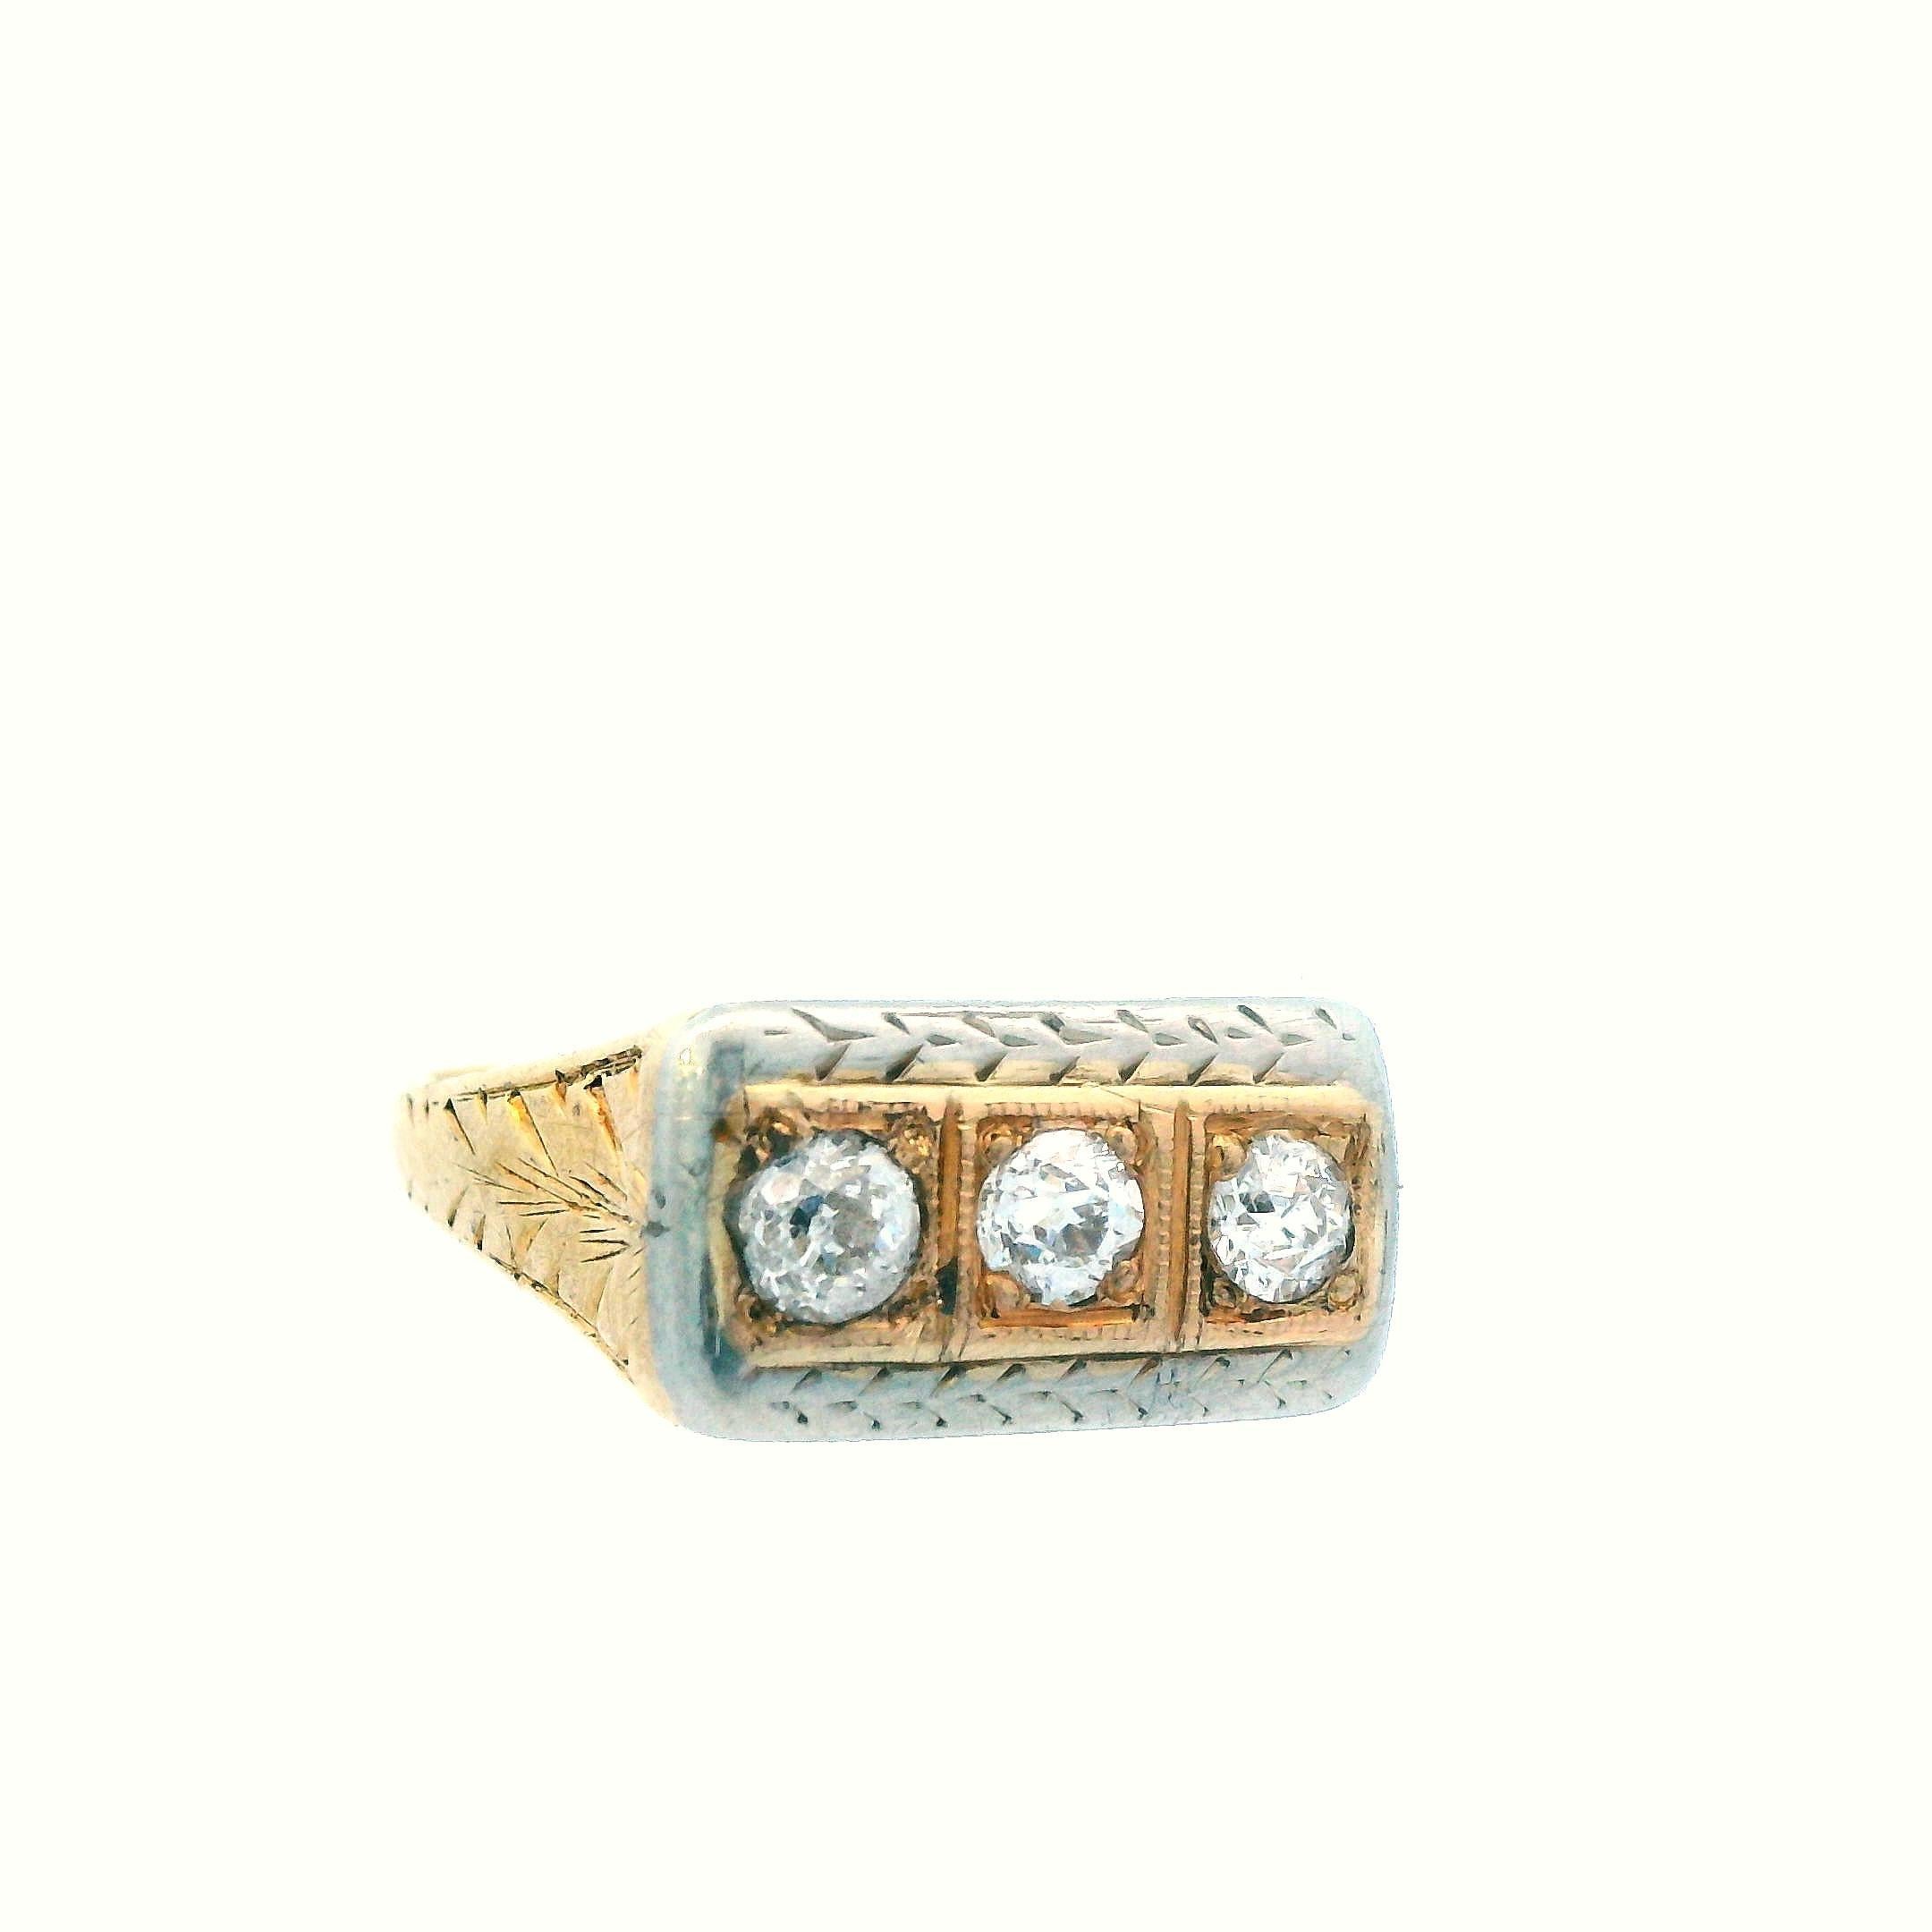 Dieser schöne Ring aus dem Jahr 1925 Art Deco ist zweifarbig, sowohl mit 14k Gelb- und 14k Weißgold, mit 3 Diamanten. Der Ring hat die Größe 4,5, kann aber auf Wunsch in der Größe angepasst werden. Dieser Ring eignet sich perfekt für die Mode, da er